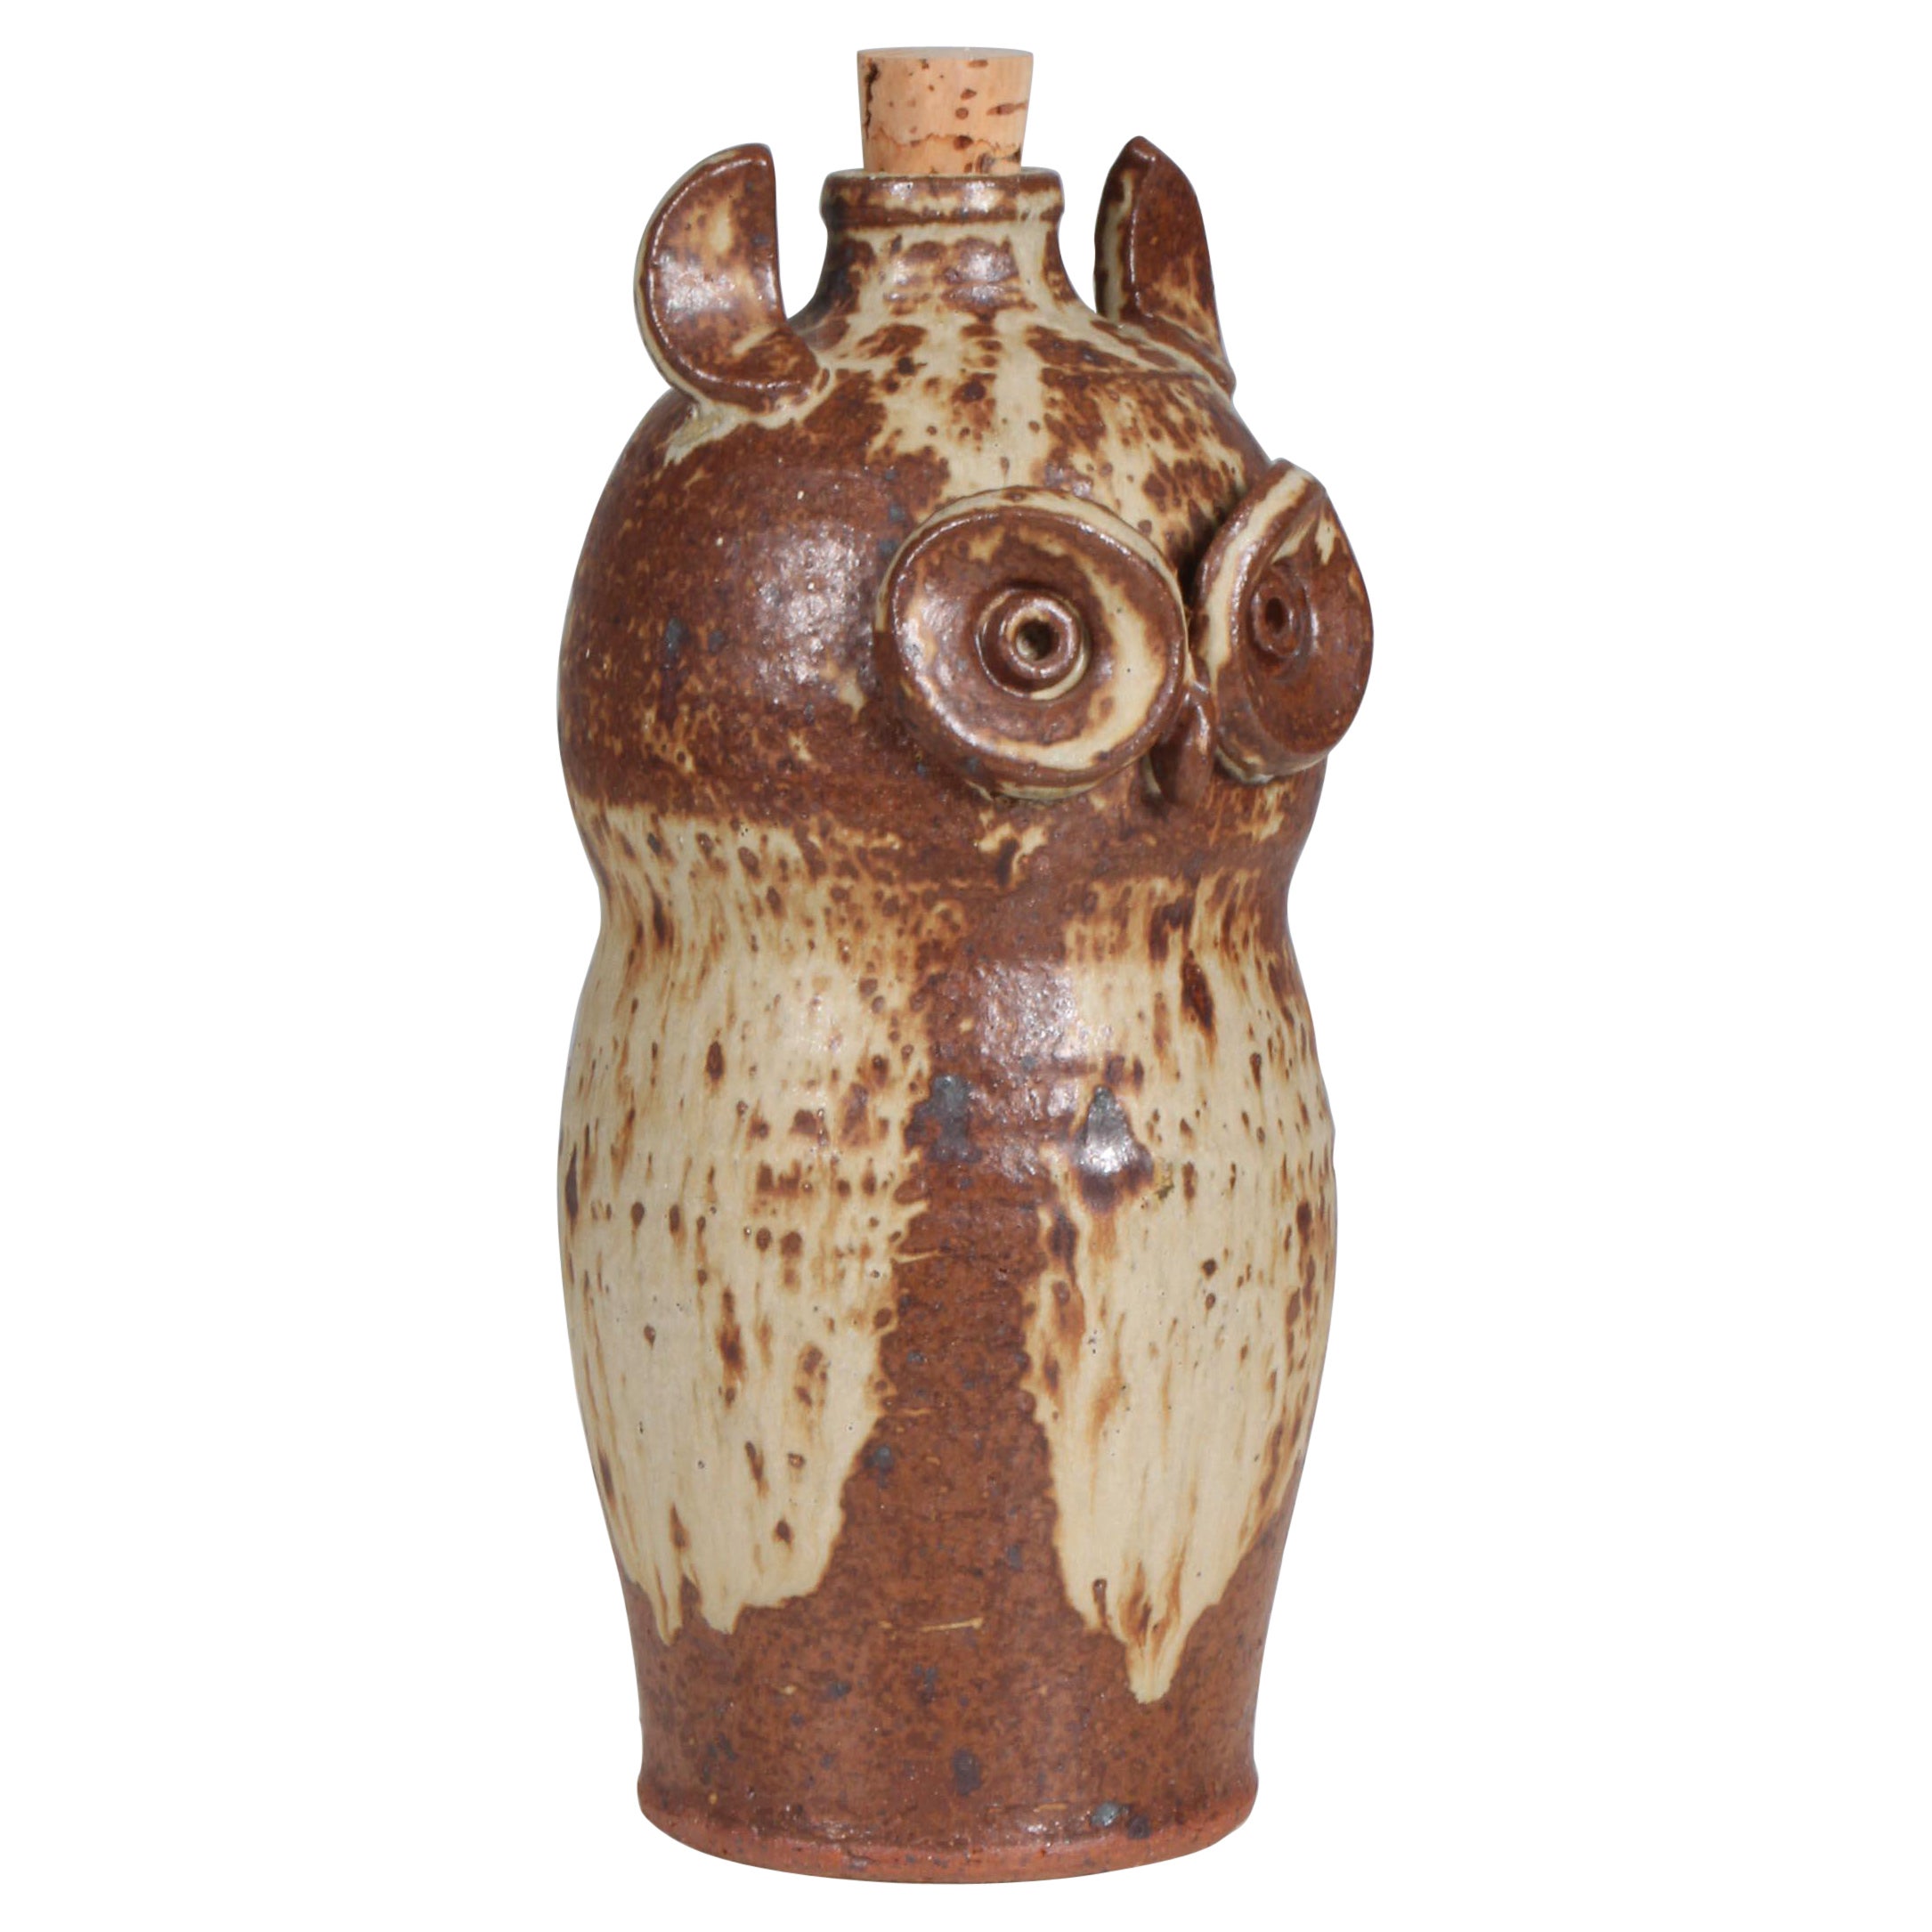 Dorte Visby glazed ceramic bottle